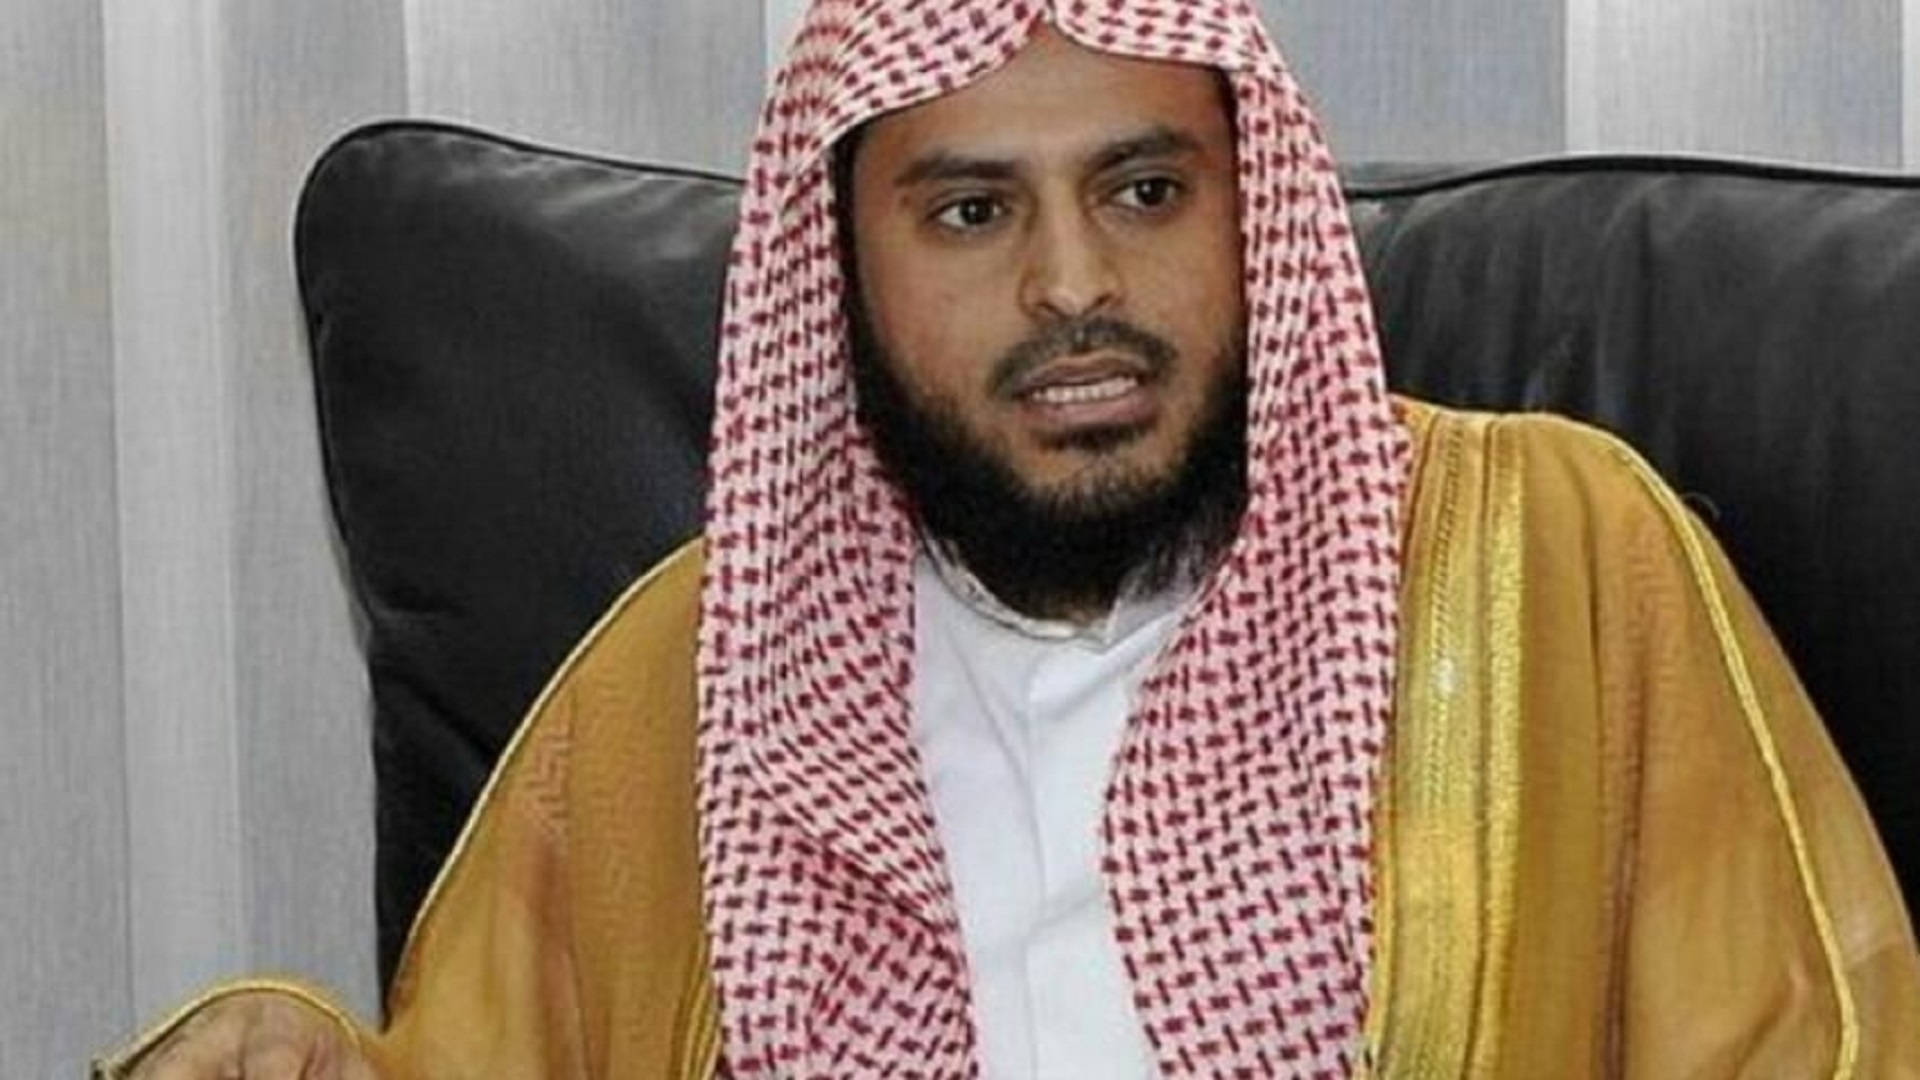 بأي ذنب سُجن؟!.. عبدالعزيز الطريفي و8 أعوام في غياهب معتقلات السعودية دون محاكمة